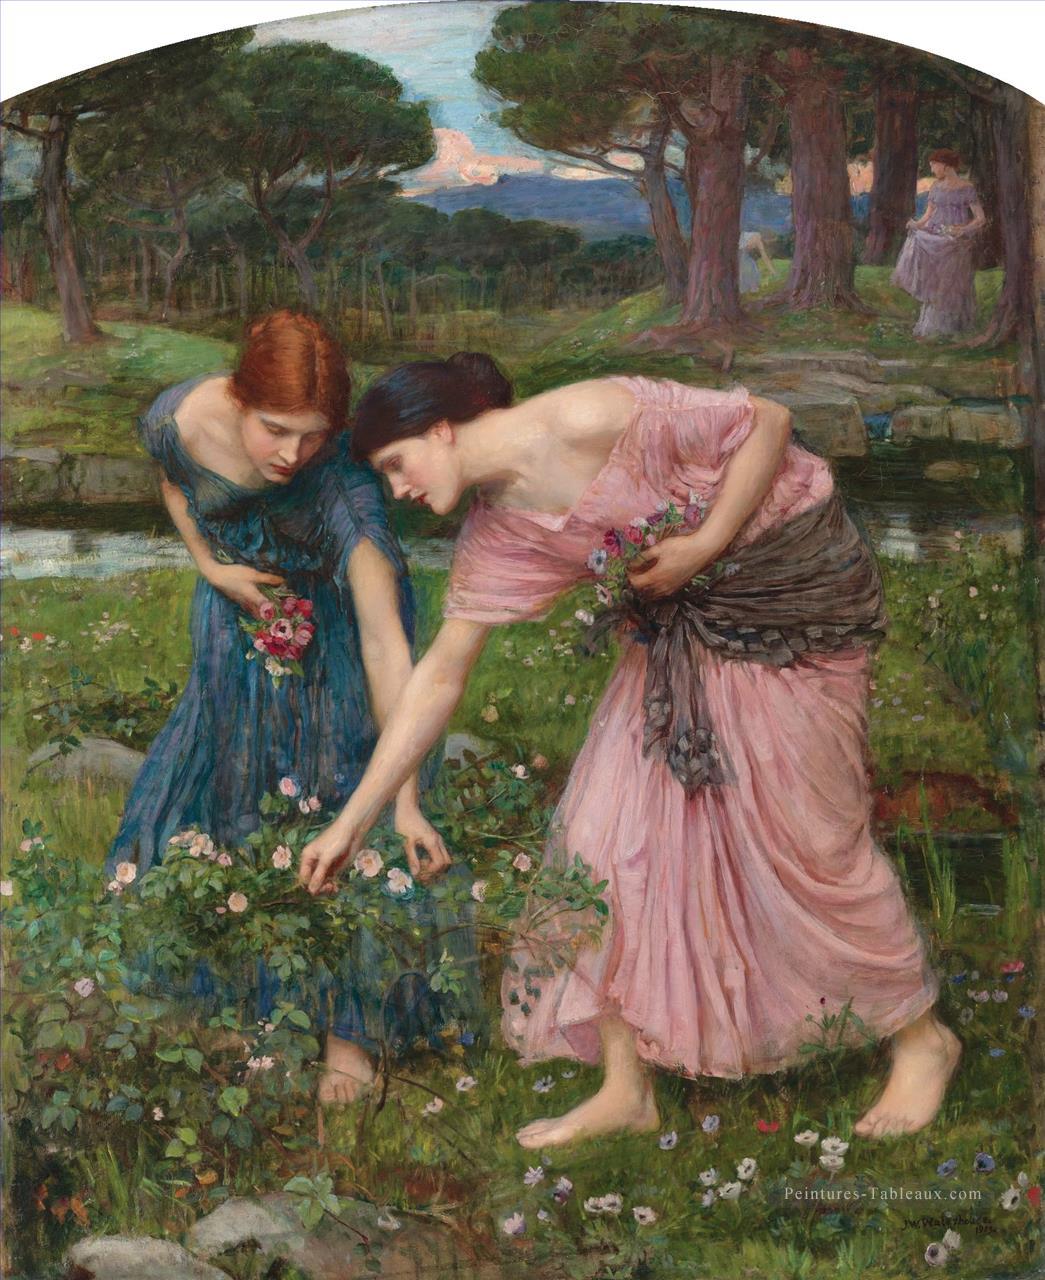 Rassemblez des boutons de roses pendant que vous mai 1909 femme grecque John William Waterhouse Peintures à l'huile